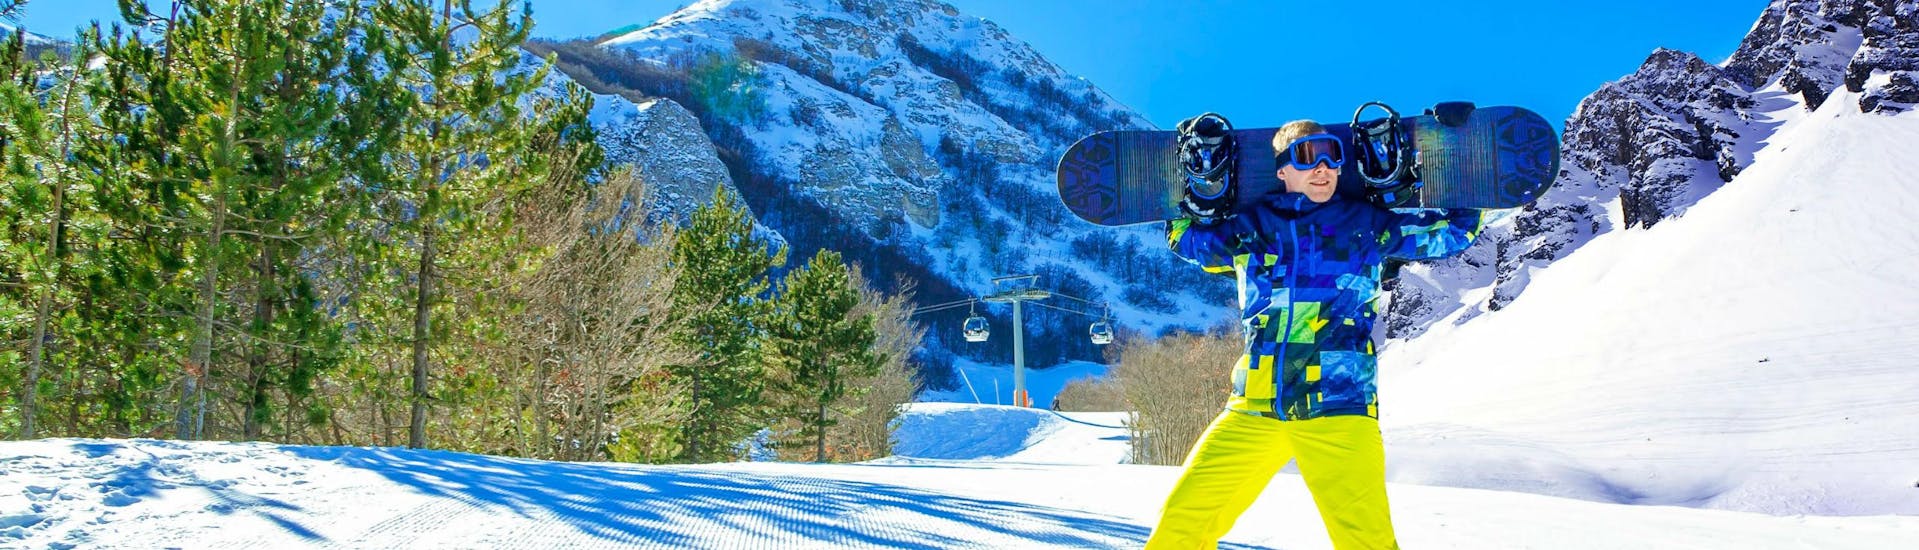 Ein Snowboarder posiert auf einer sonnigen Skipiste im italienischen Skigebiet Ovindoli, wo viele Skikurse von den örtlichen Skischulen angeboten werden.